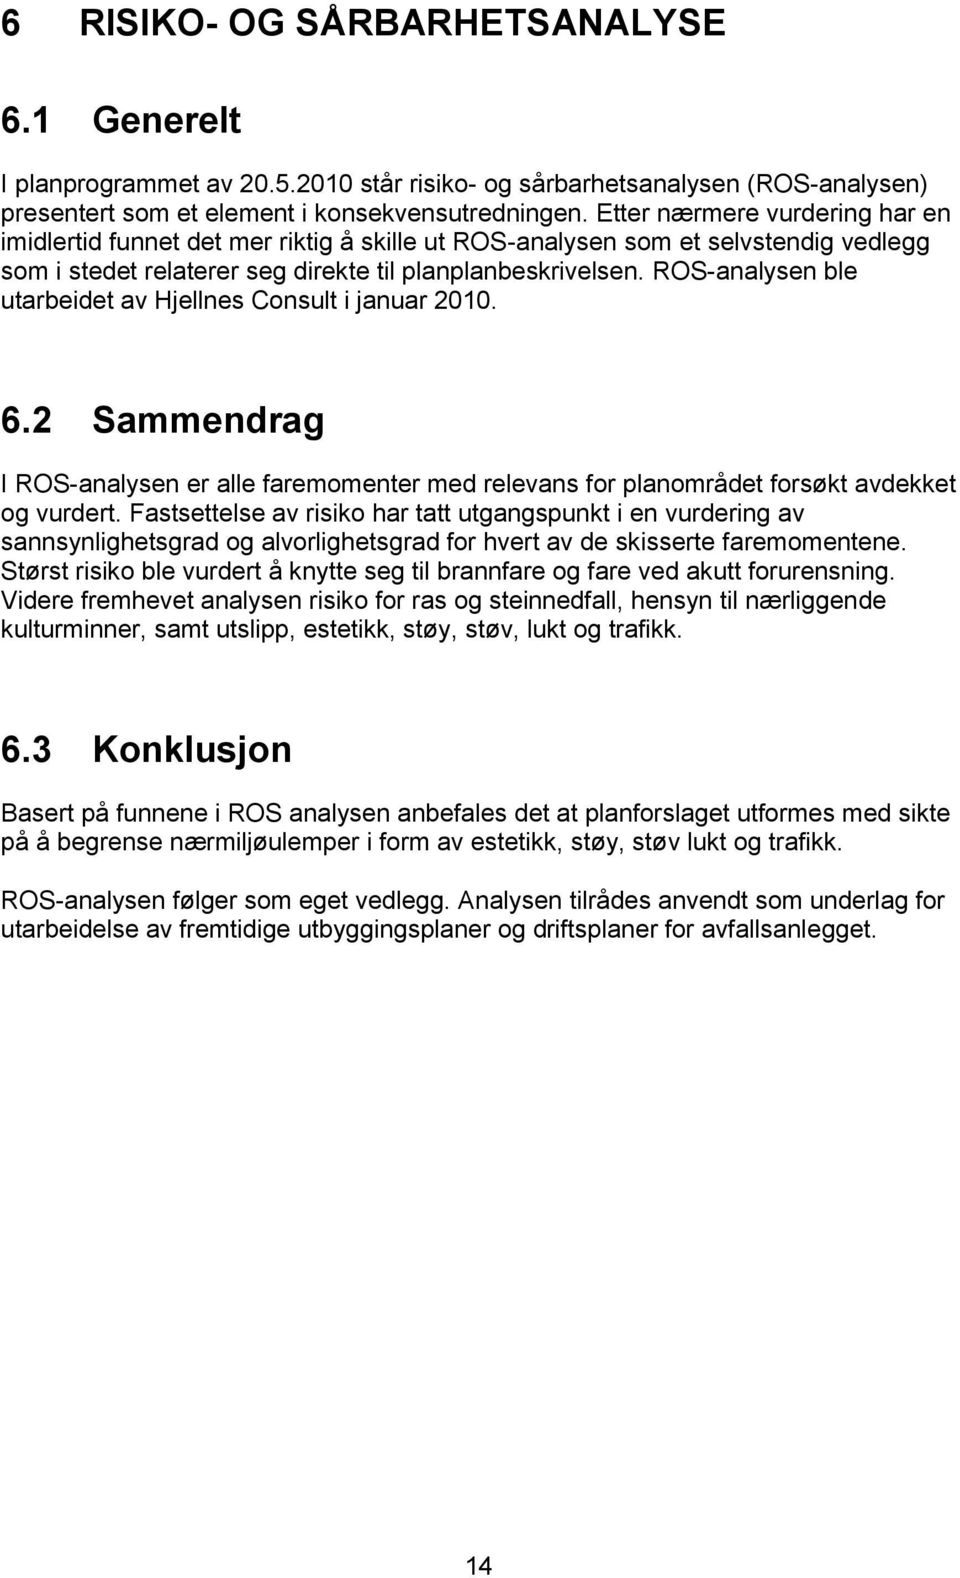 ROS-analysen ble utarbeidet av Hjellnes Consult i januar 2010. 6.2 Sammendrag I ROS-analysen er alle faremomenter med relevans for planområdet forsøkt avdekket og vurdert.